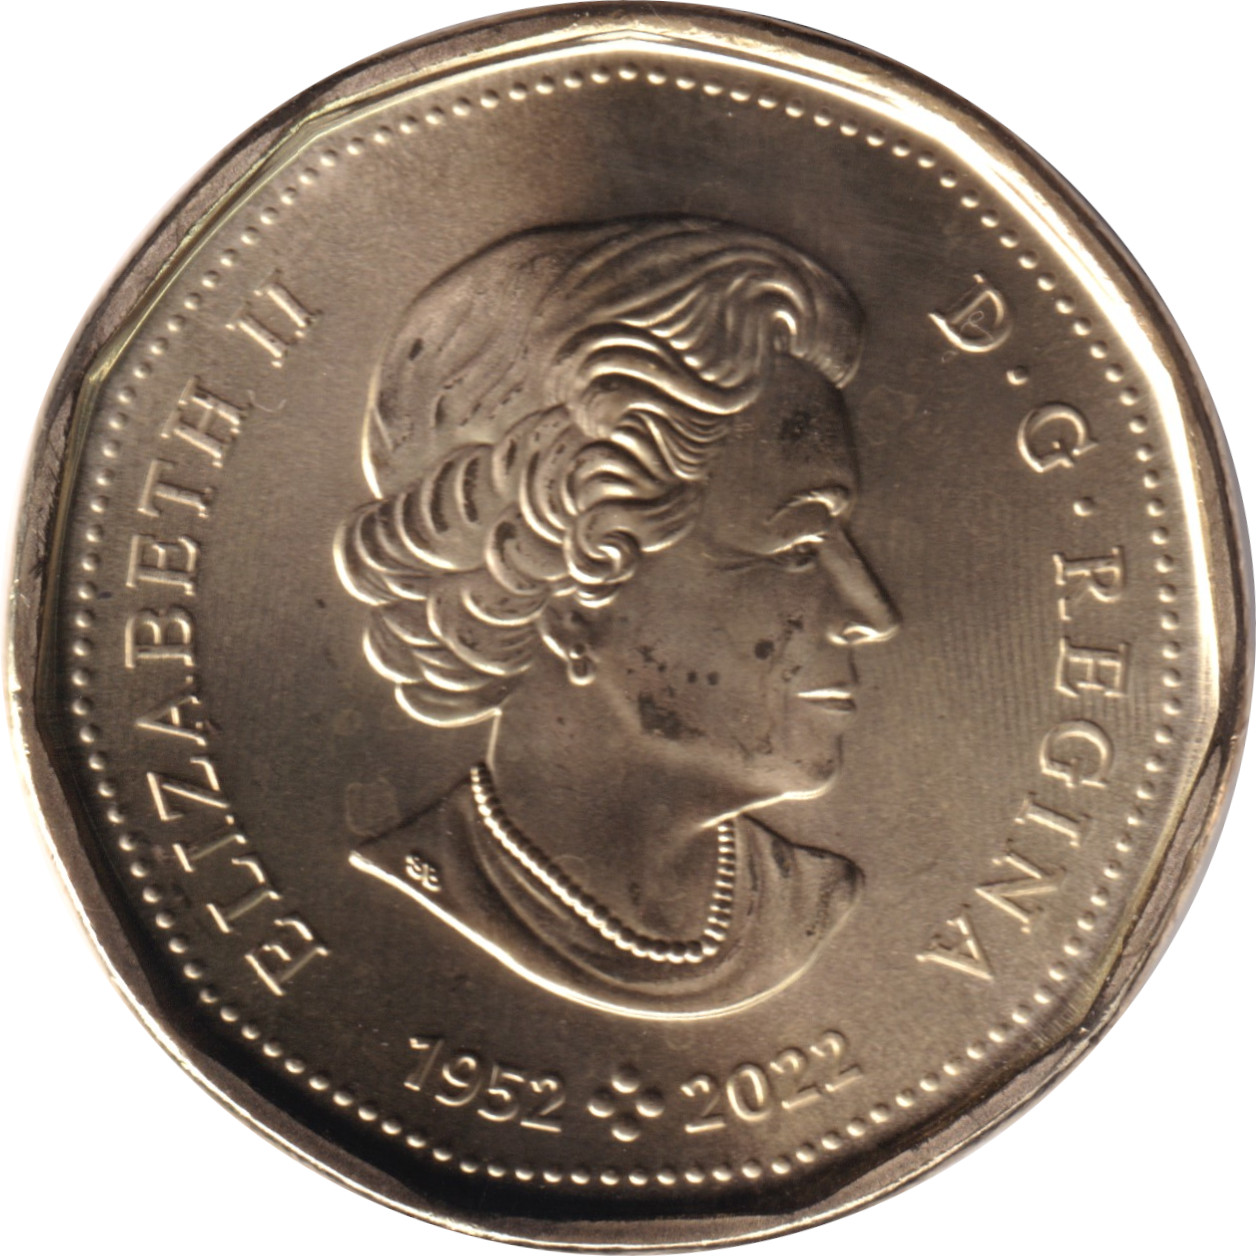 1 dollar - Elizabeth II - Orignal